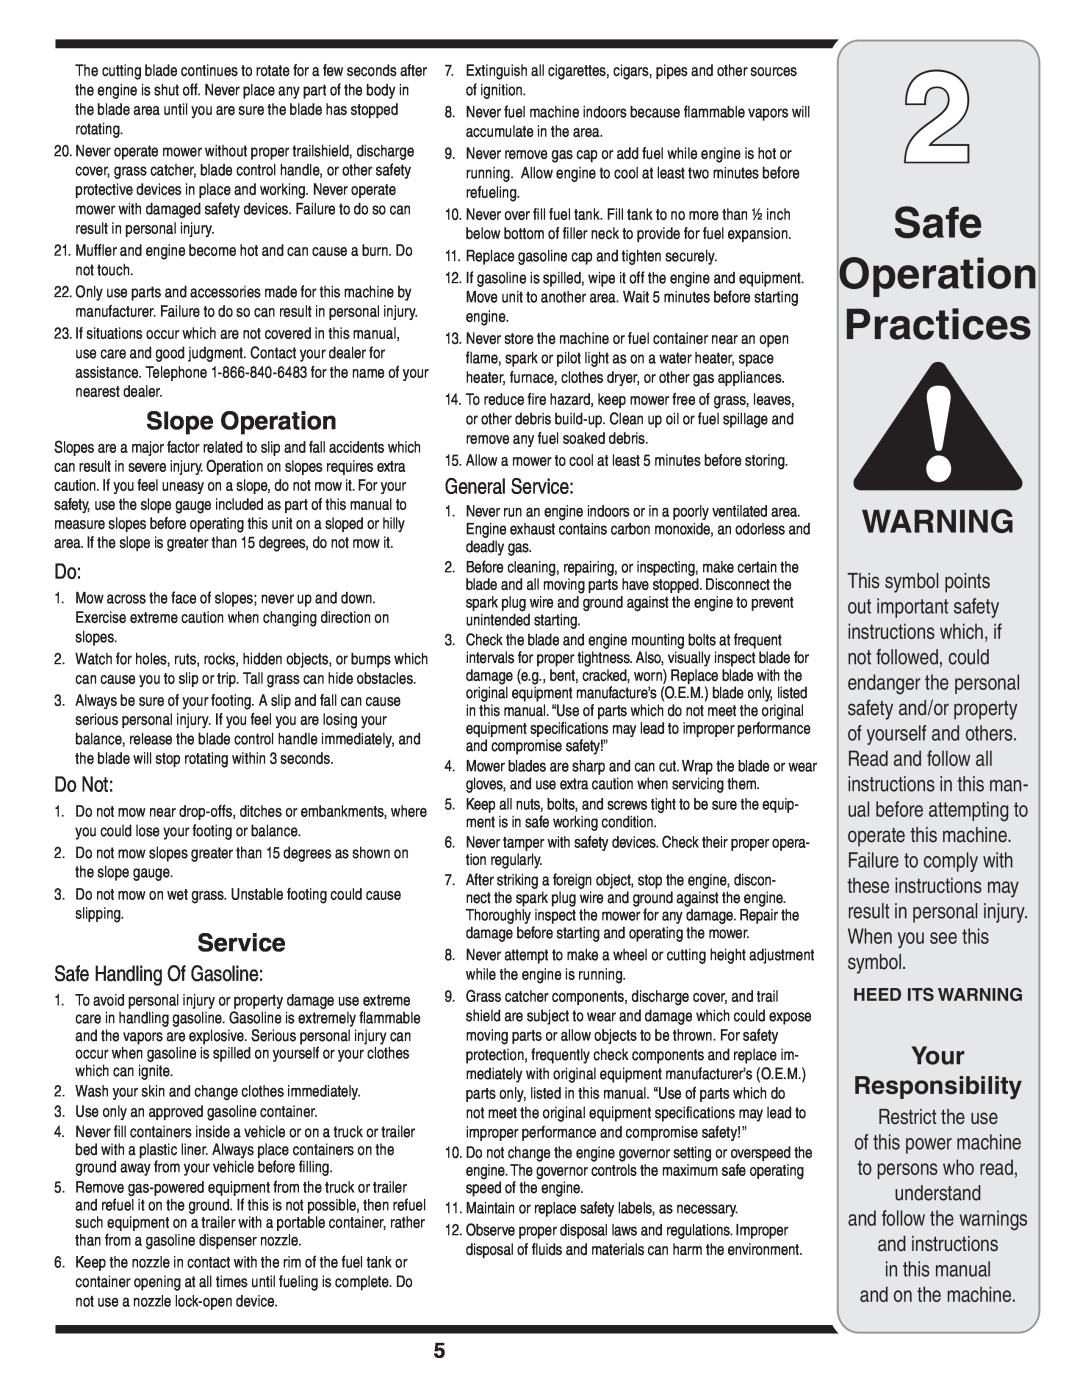 Troy-Bilt 429 warranty Safe Operation Practices, Slope Operation, Do Not, Safe Handling Of Gasoline, General Service 